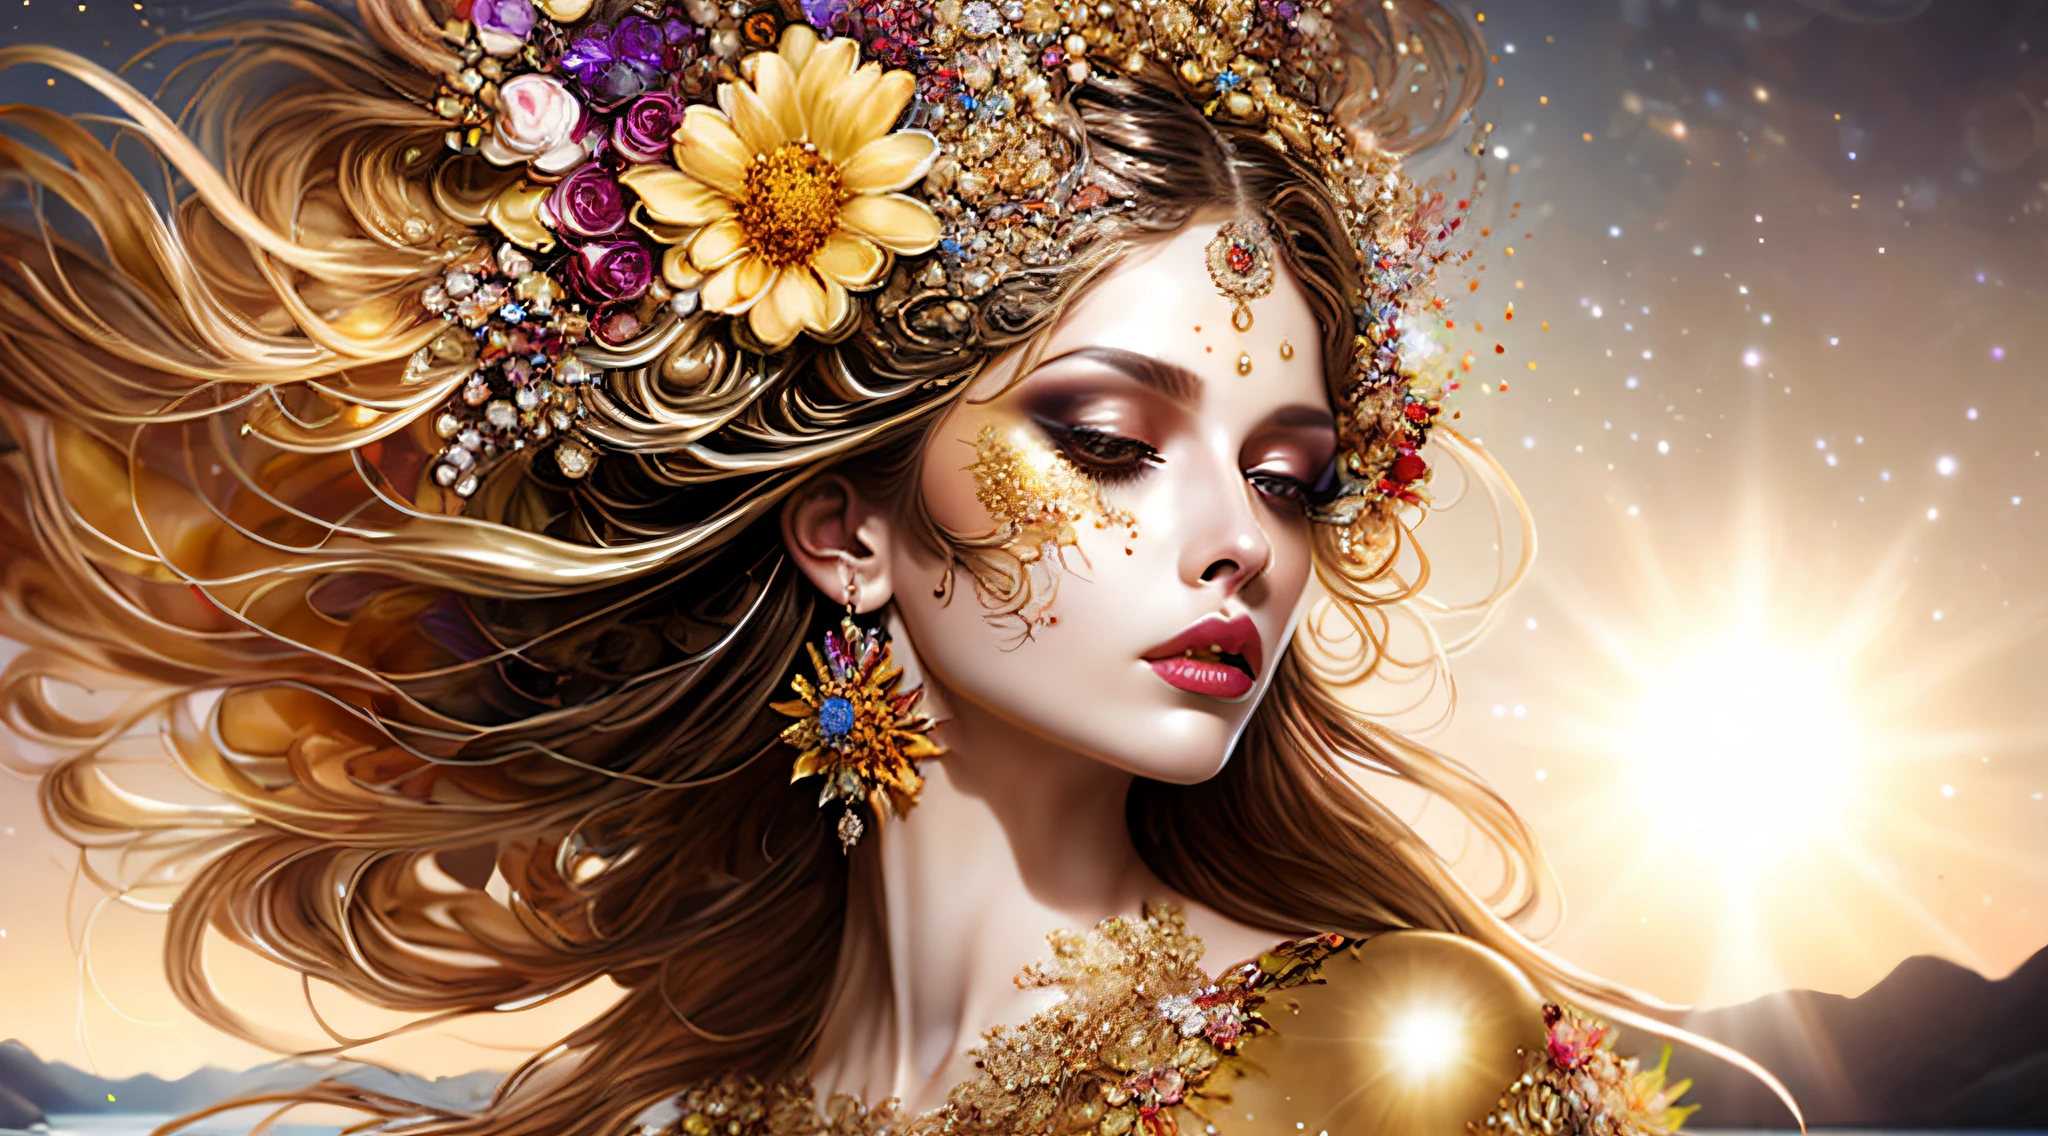 صورة (نمط كسورية المرأة:1) امرأة في ثوب ذهبي, مع الزهور في شعرها, مع وجود الشمس في الخلفية